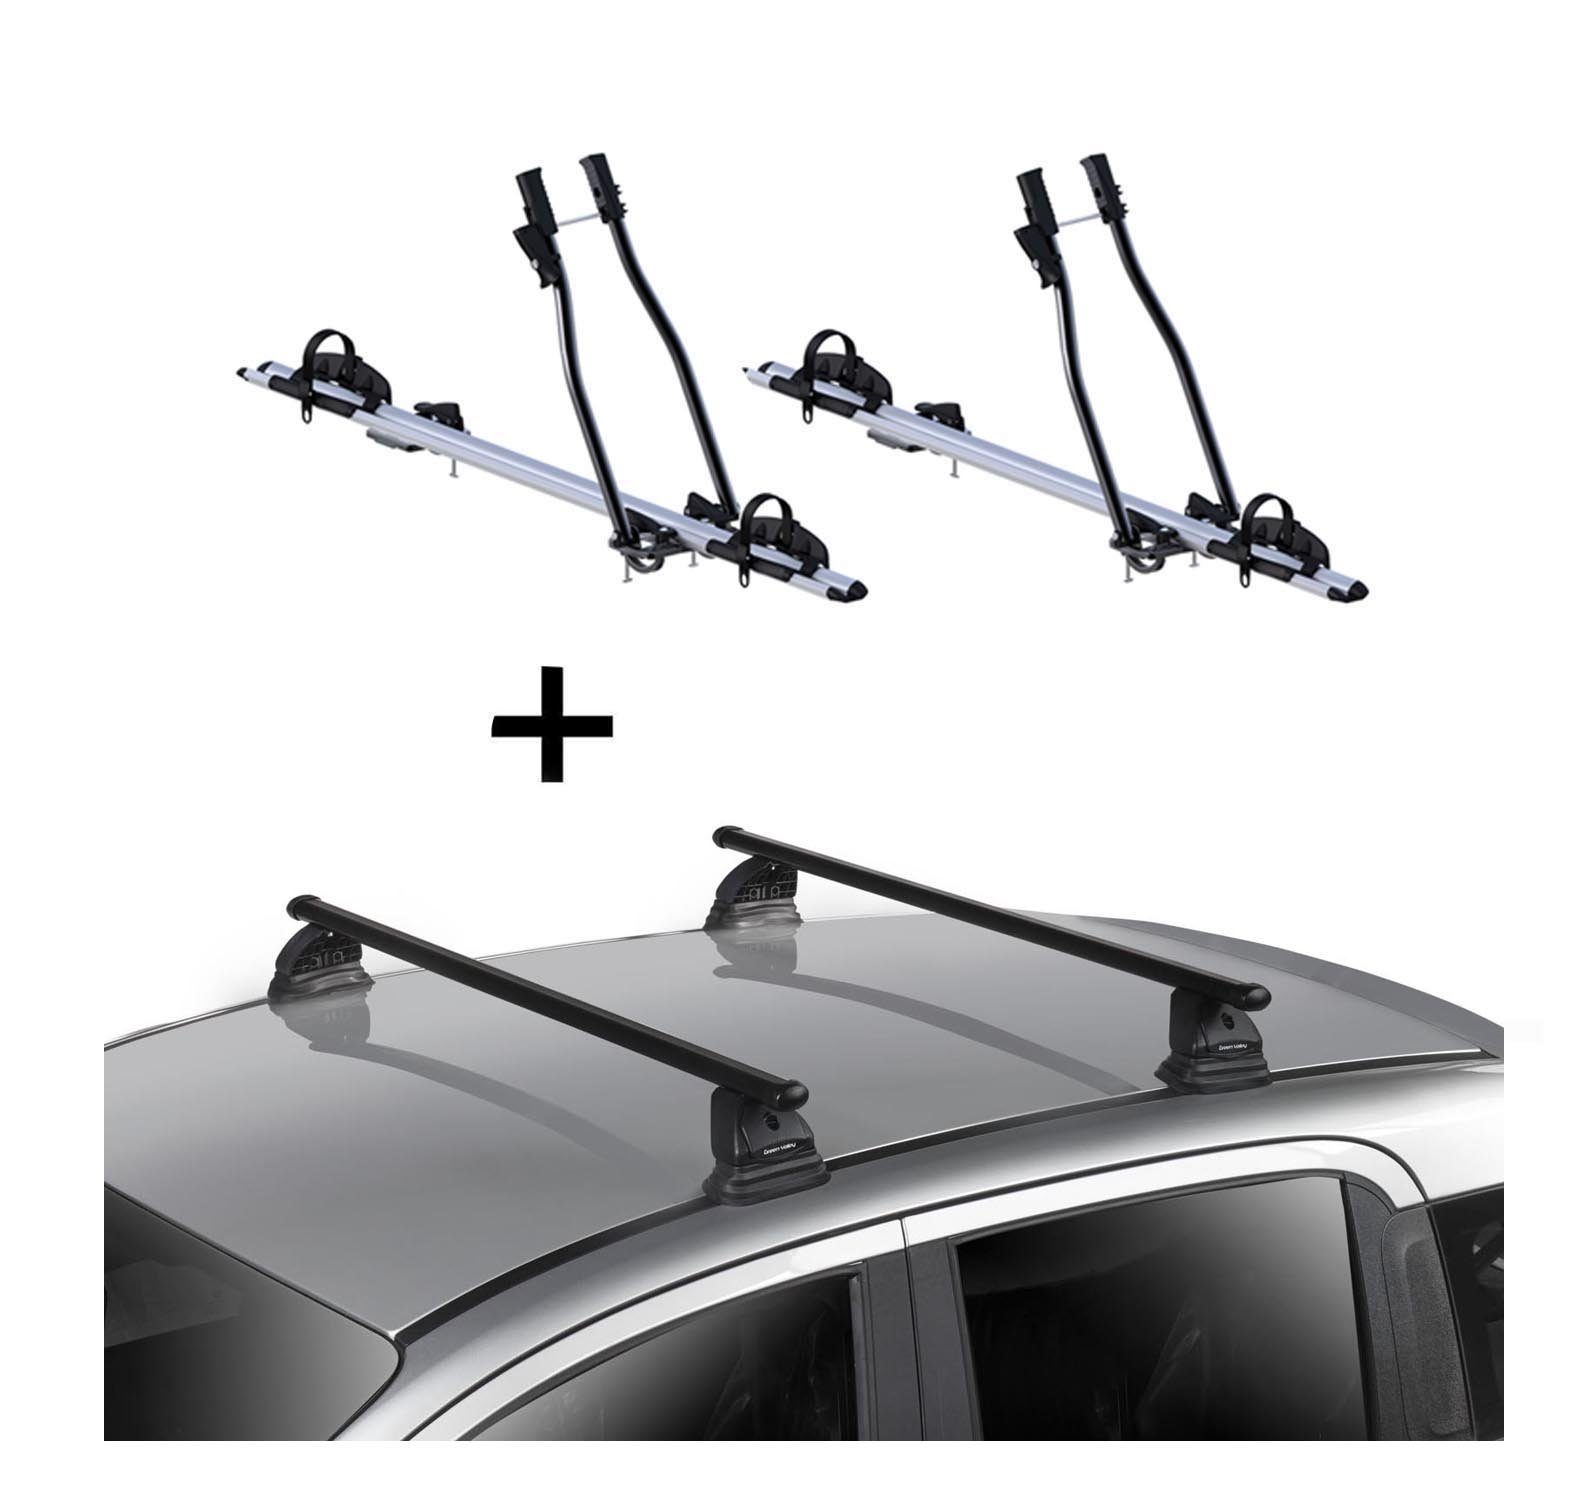 VDP Dachträger, 2x Fahrradträger SAGITTAR + Dachträger VDP EVO Stahl kompatibel mit Peugeot 207 3-5 Türer 2006-2015